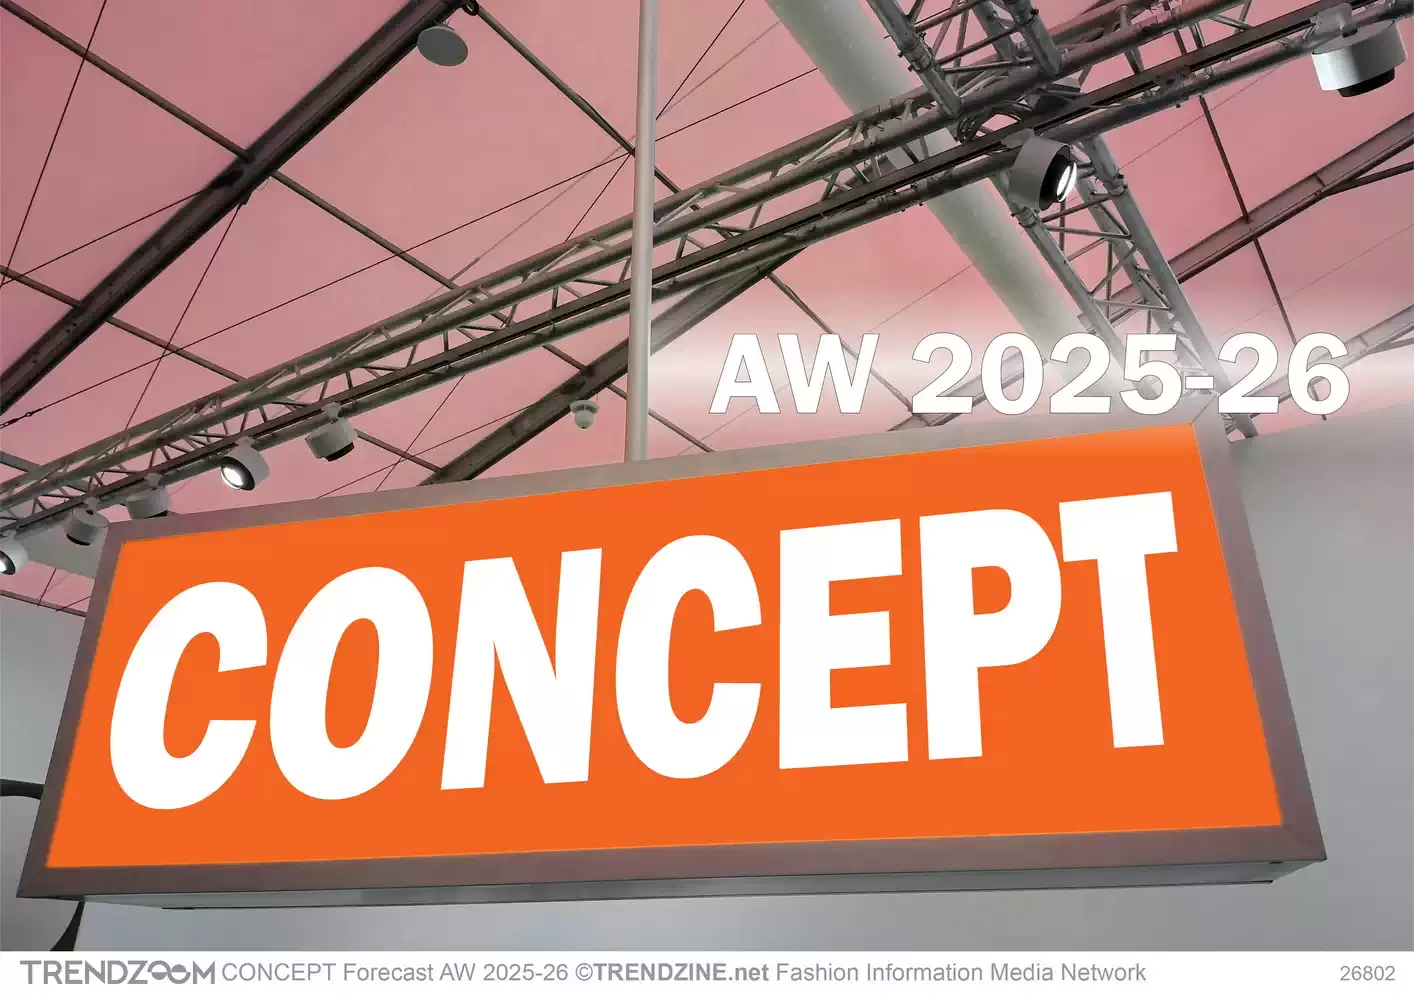 CONCEPT Forecast AW 2025-26